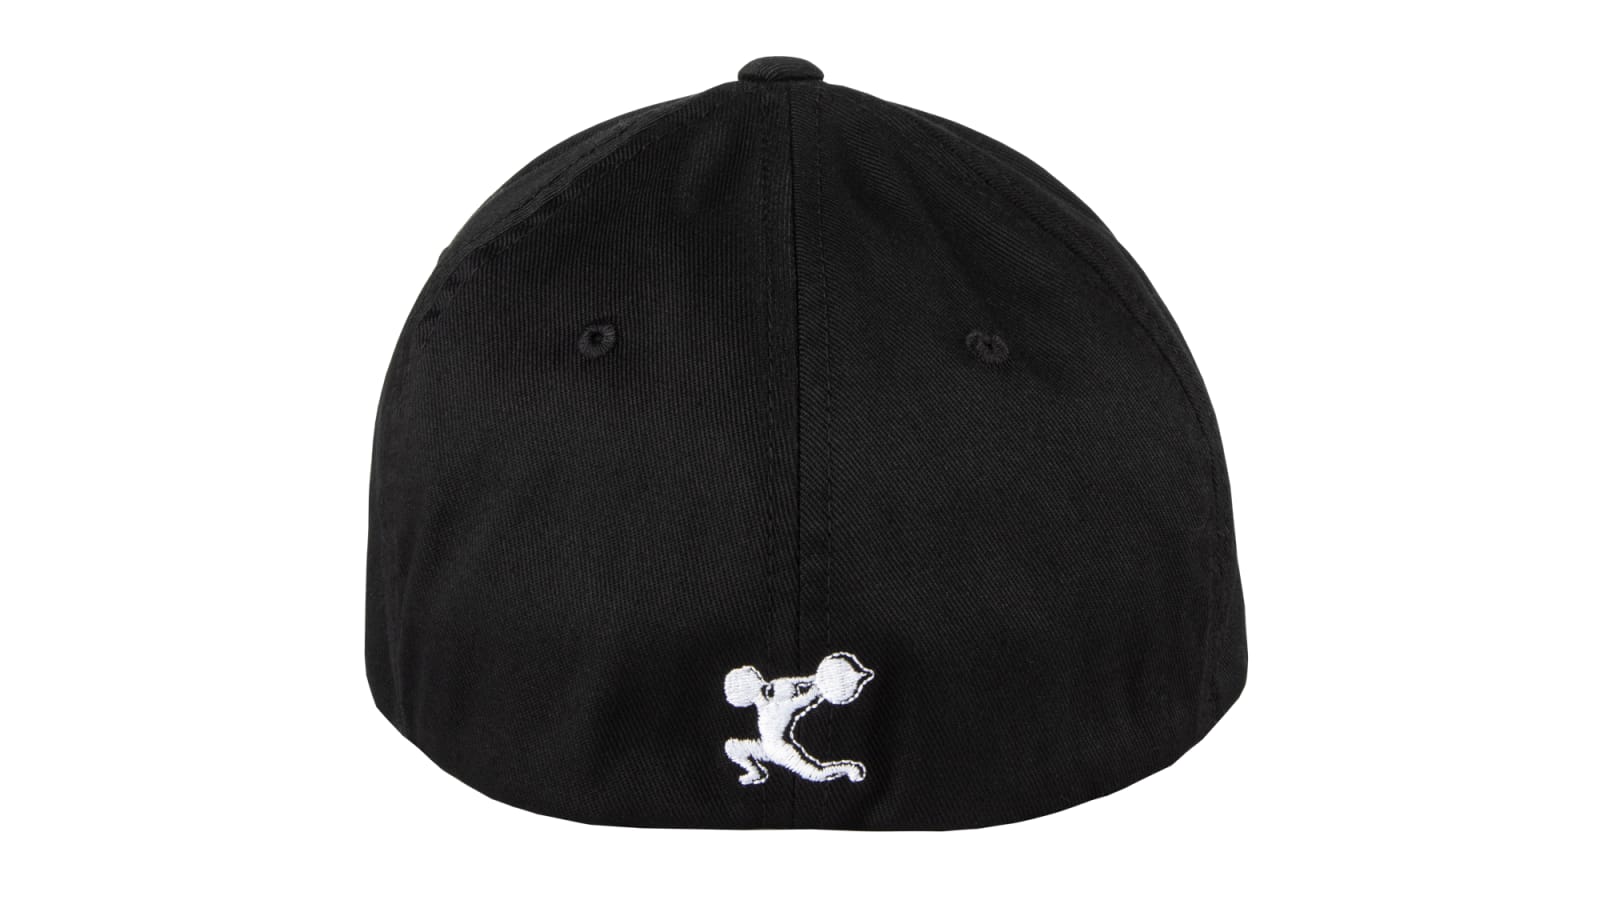  Reebok CrossFit Cap A-Flex Black Hat AY0504 (Large)